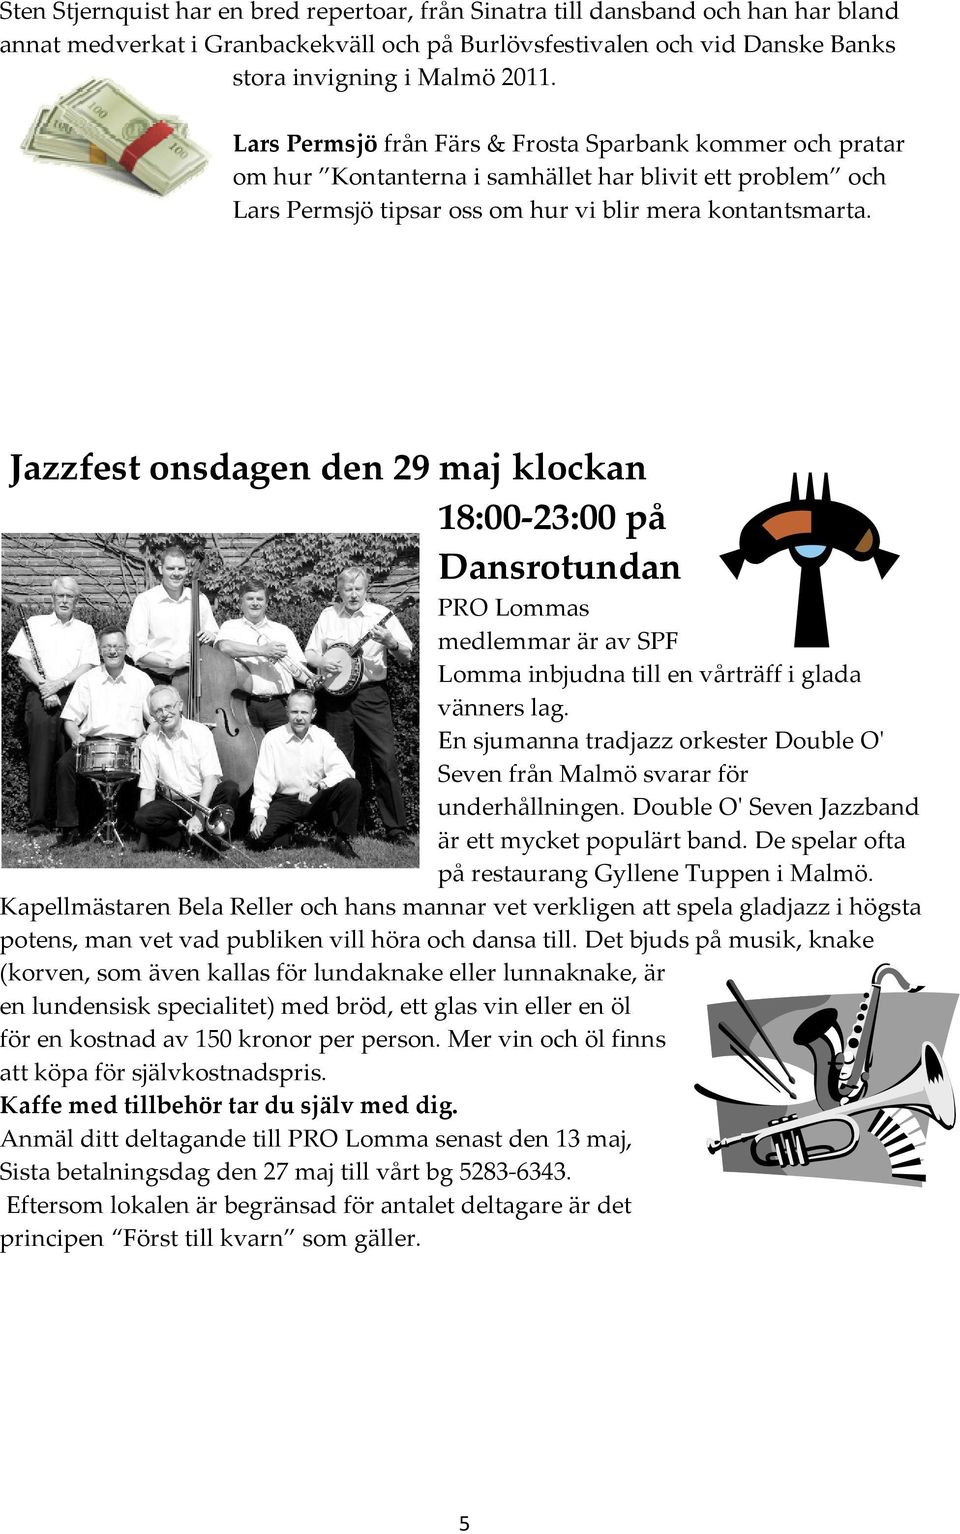 Jazzfest onsdagen den 29 maj klockan 18:00-23:00 på Dansrotundan PRO Lommas medlemmar är av SPF Lomma inbjudna till en vårträff i glada vänners lag.